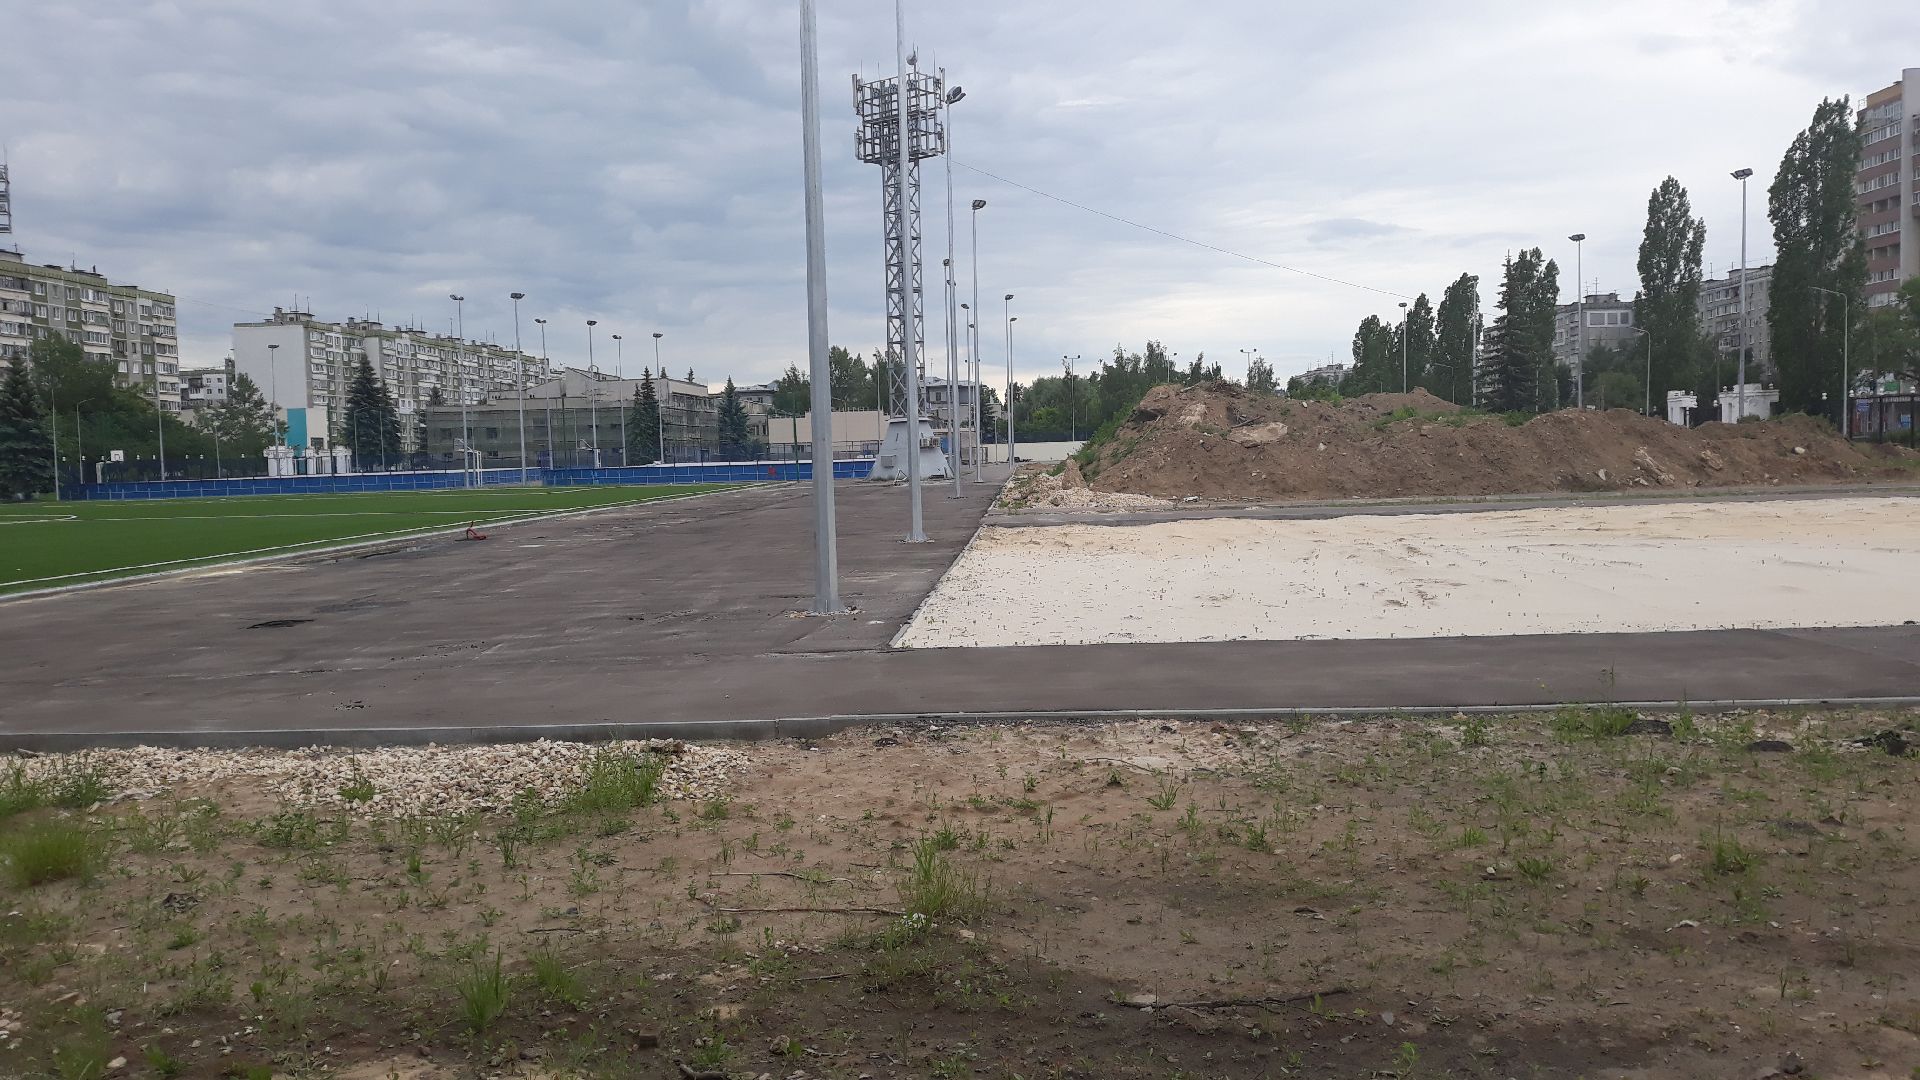 Дело о мошенничестве завели при реконструкции стадиона ручных игр в Нижнем Новгороде - фото 1